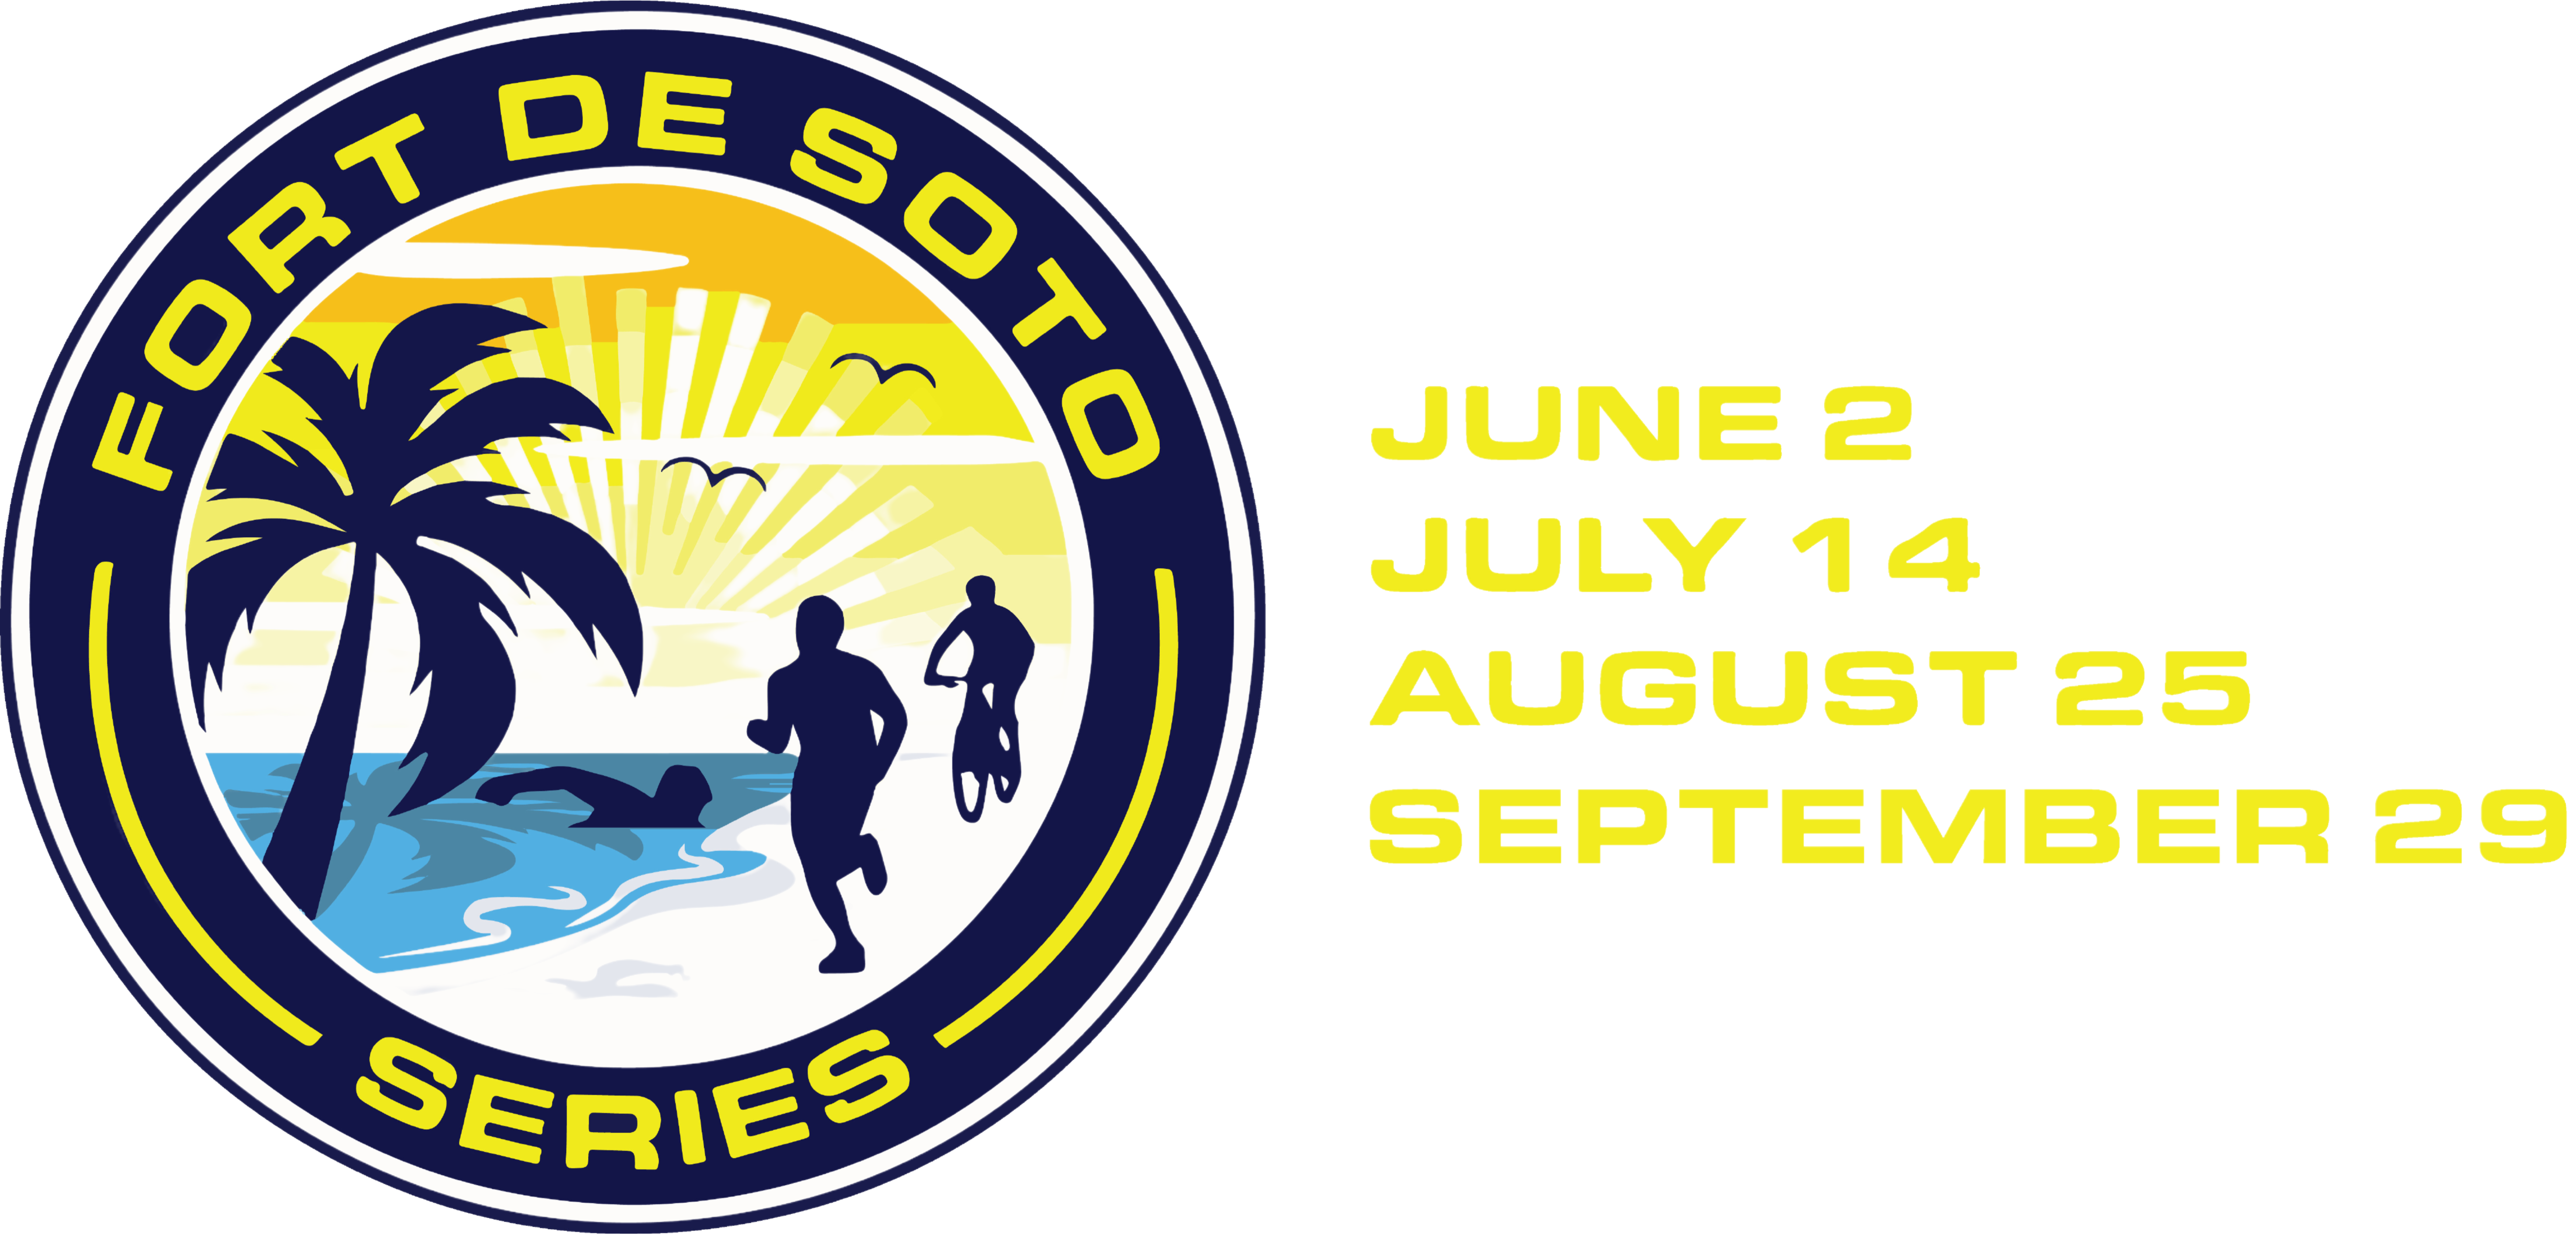 Fort DeSoto Triathlon Series